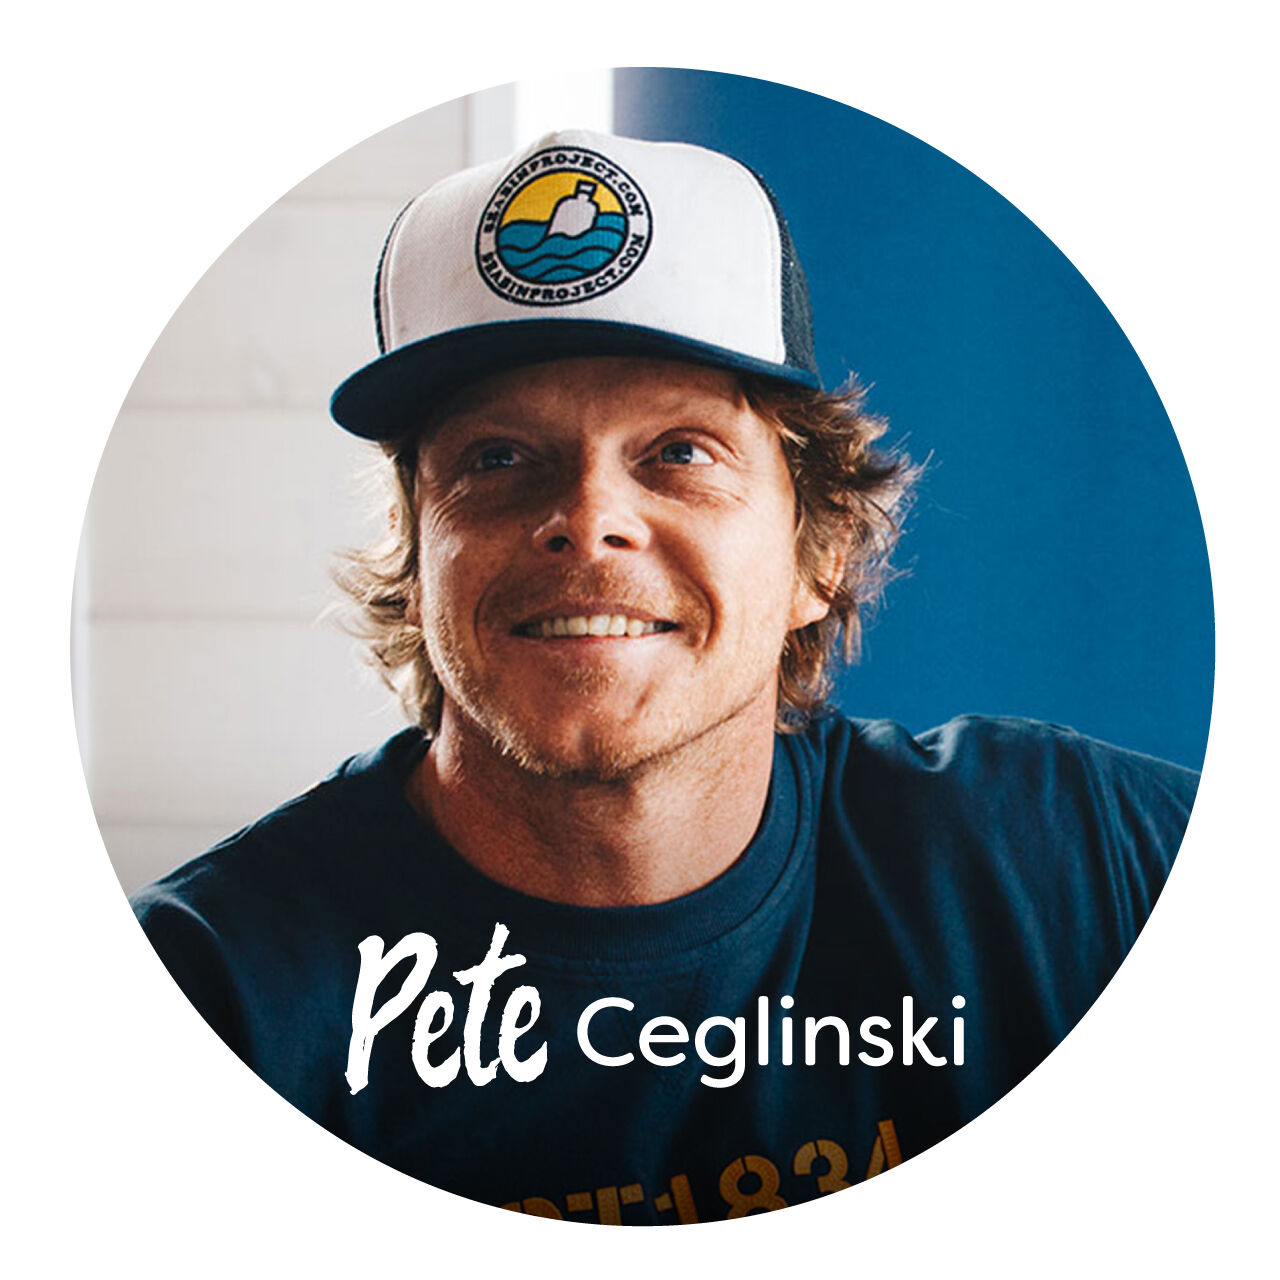 A picture of Pete Ceglinski